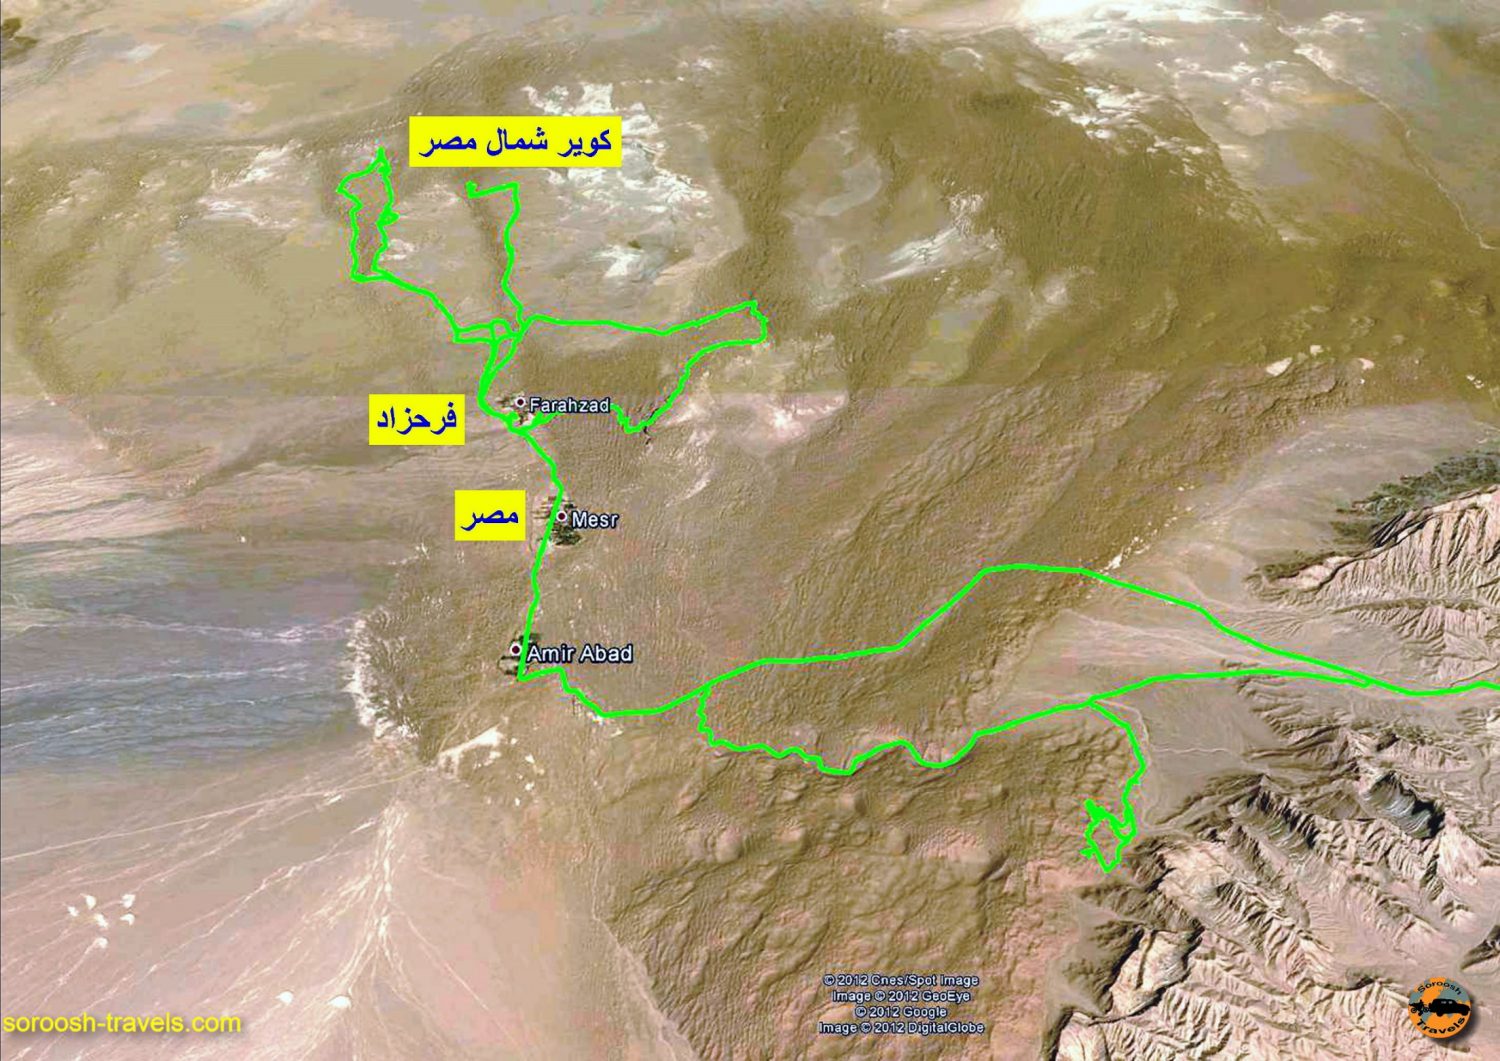 مسیر آفرود در کوبر مرکزی ایران - پاییز ۱۳۹۱